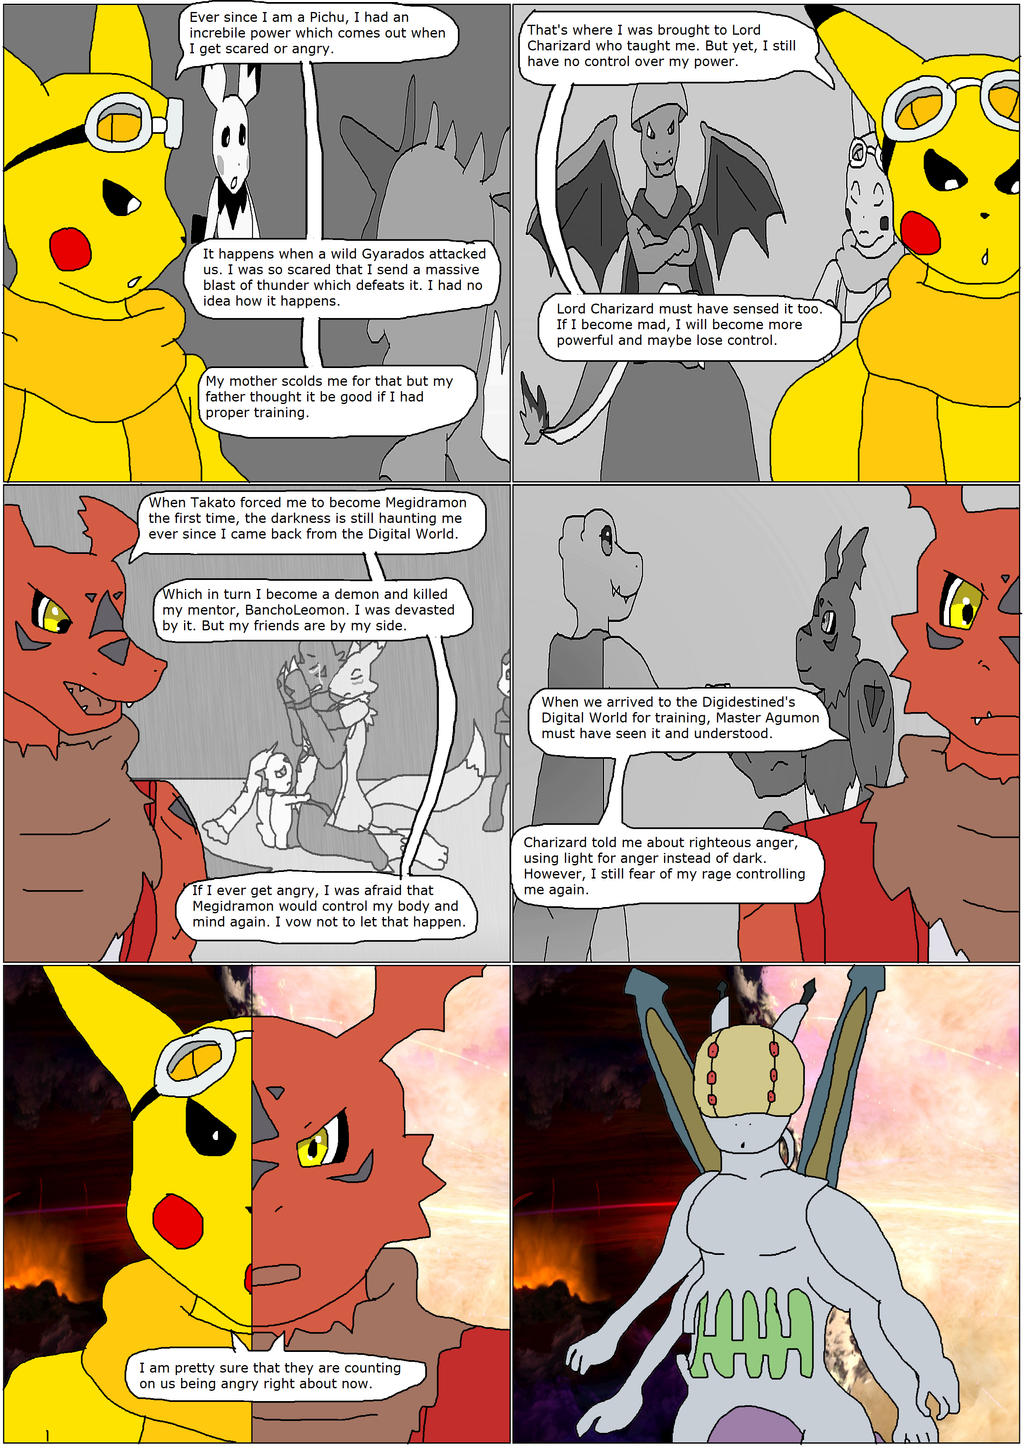 Pokemon #489 - Phione by CrimsonBalmung on DeviantArt